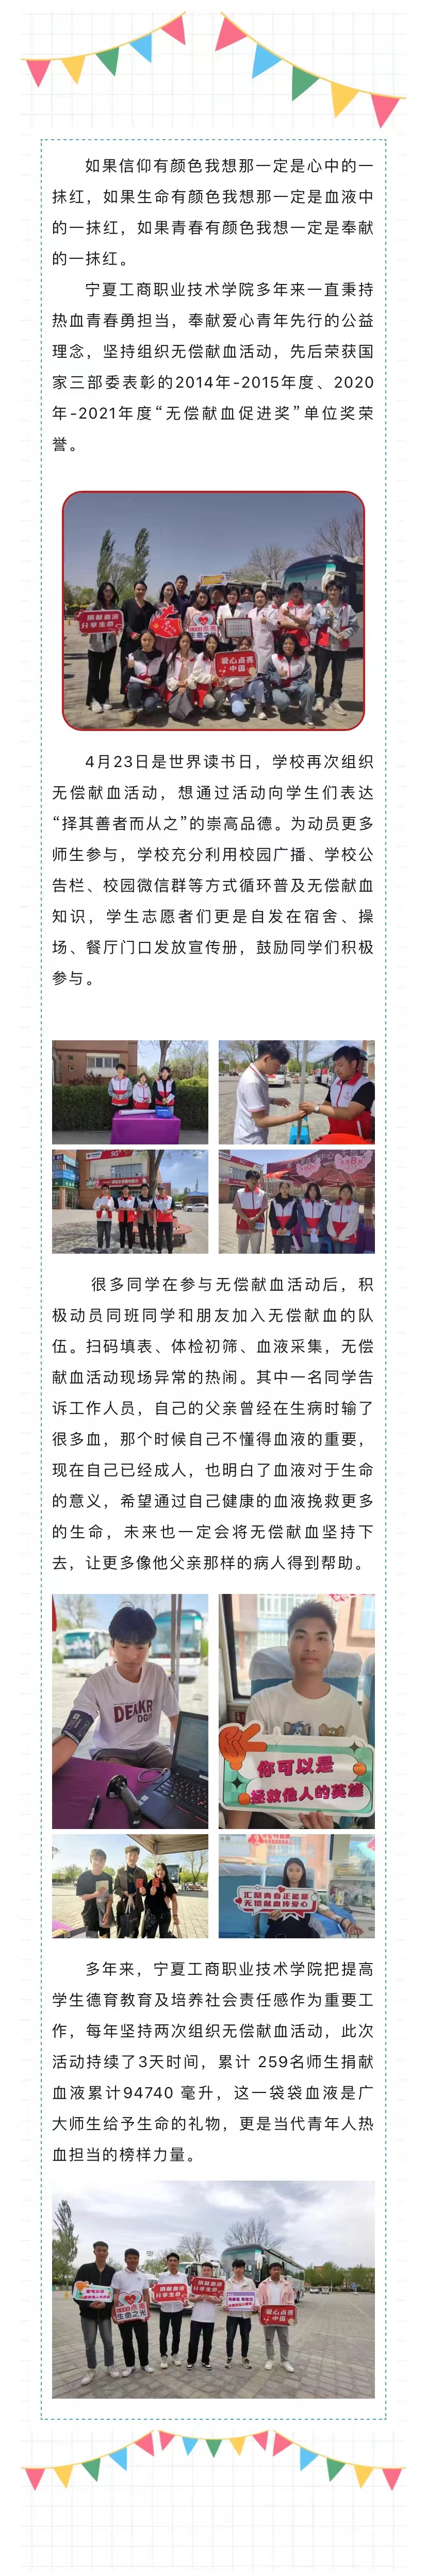 高校献血第五站——宁夏工商职业技术学院259位师生用热血书写担当